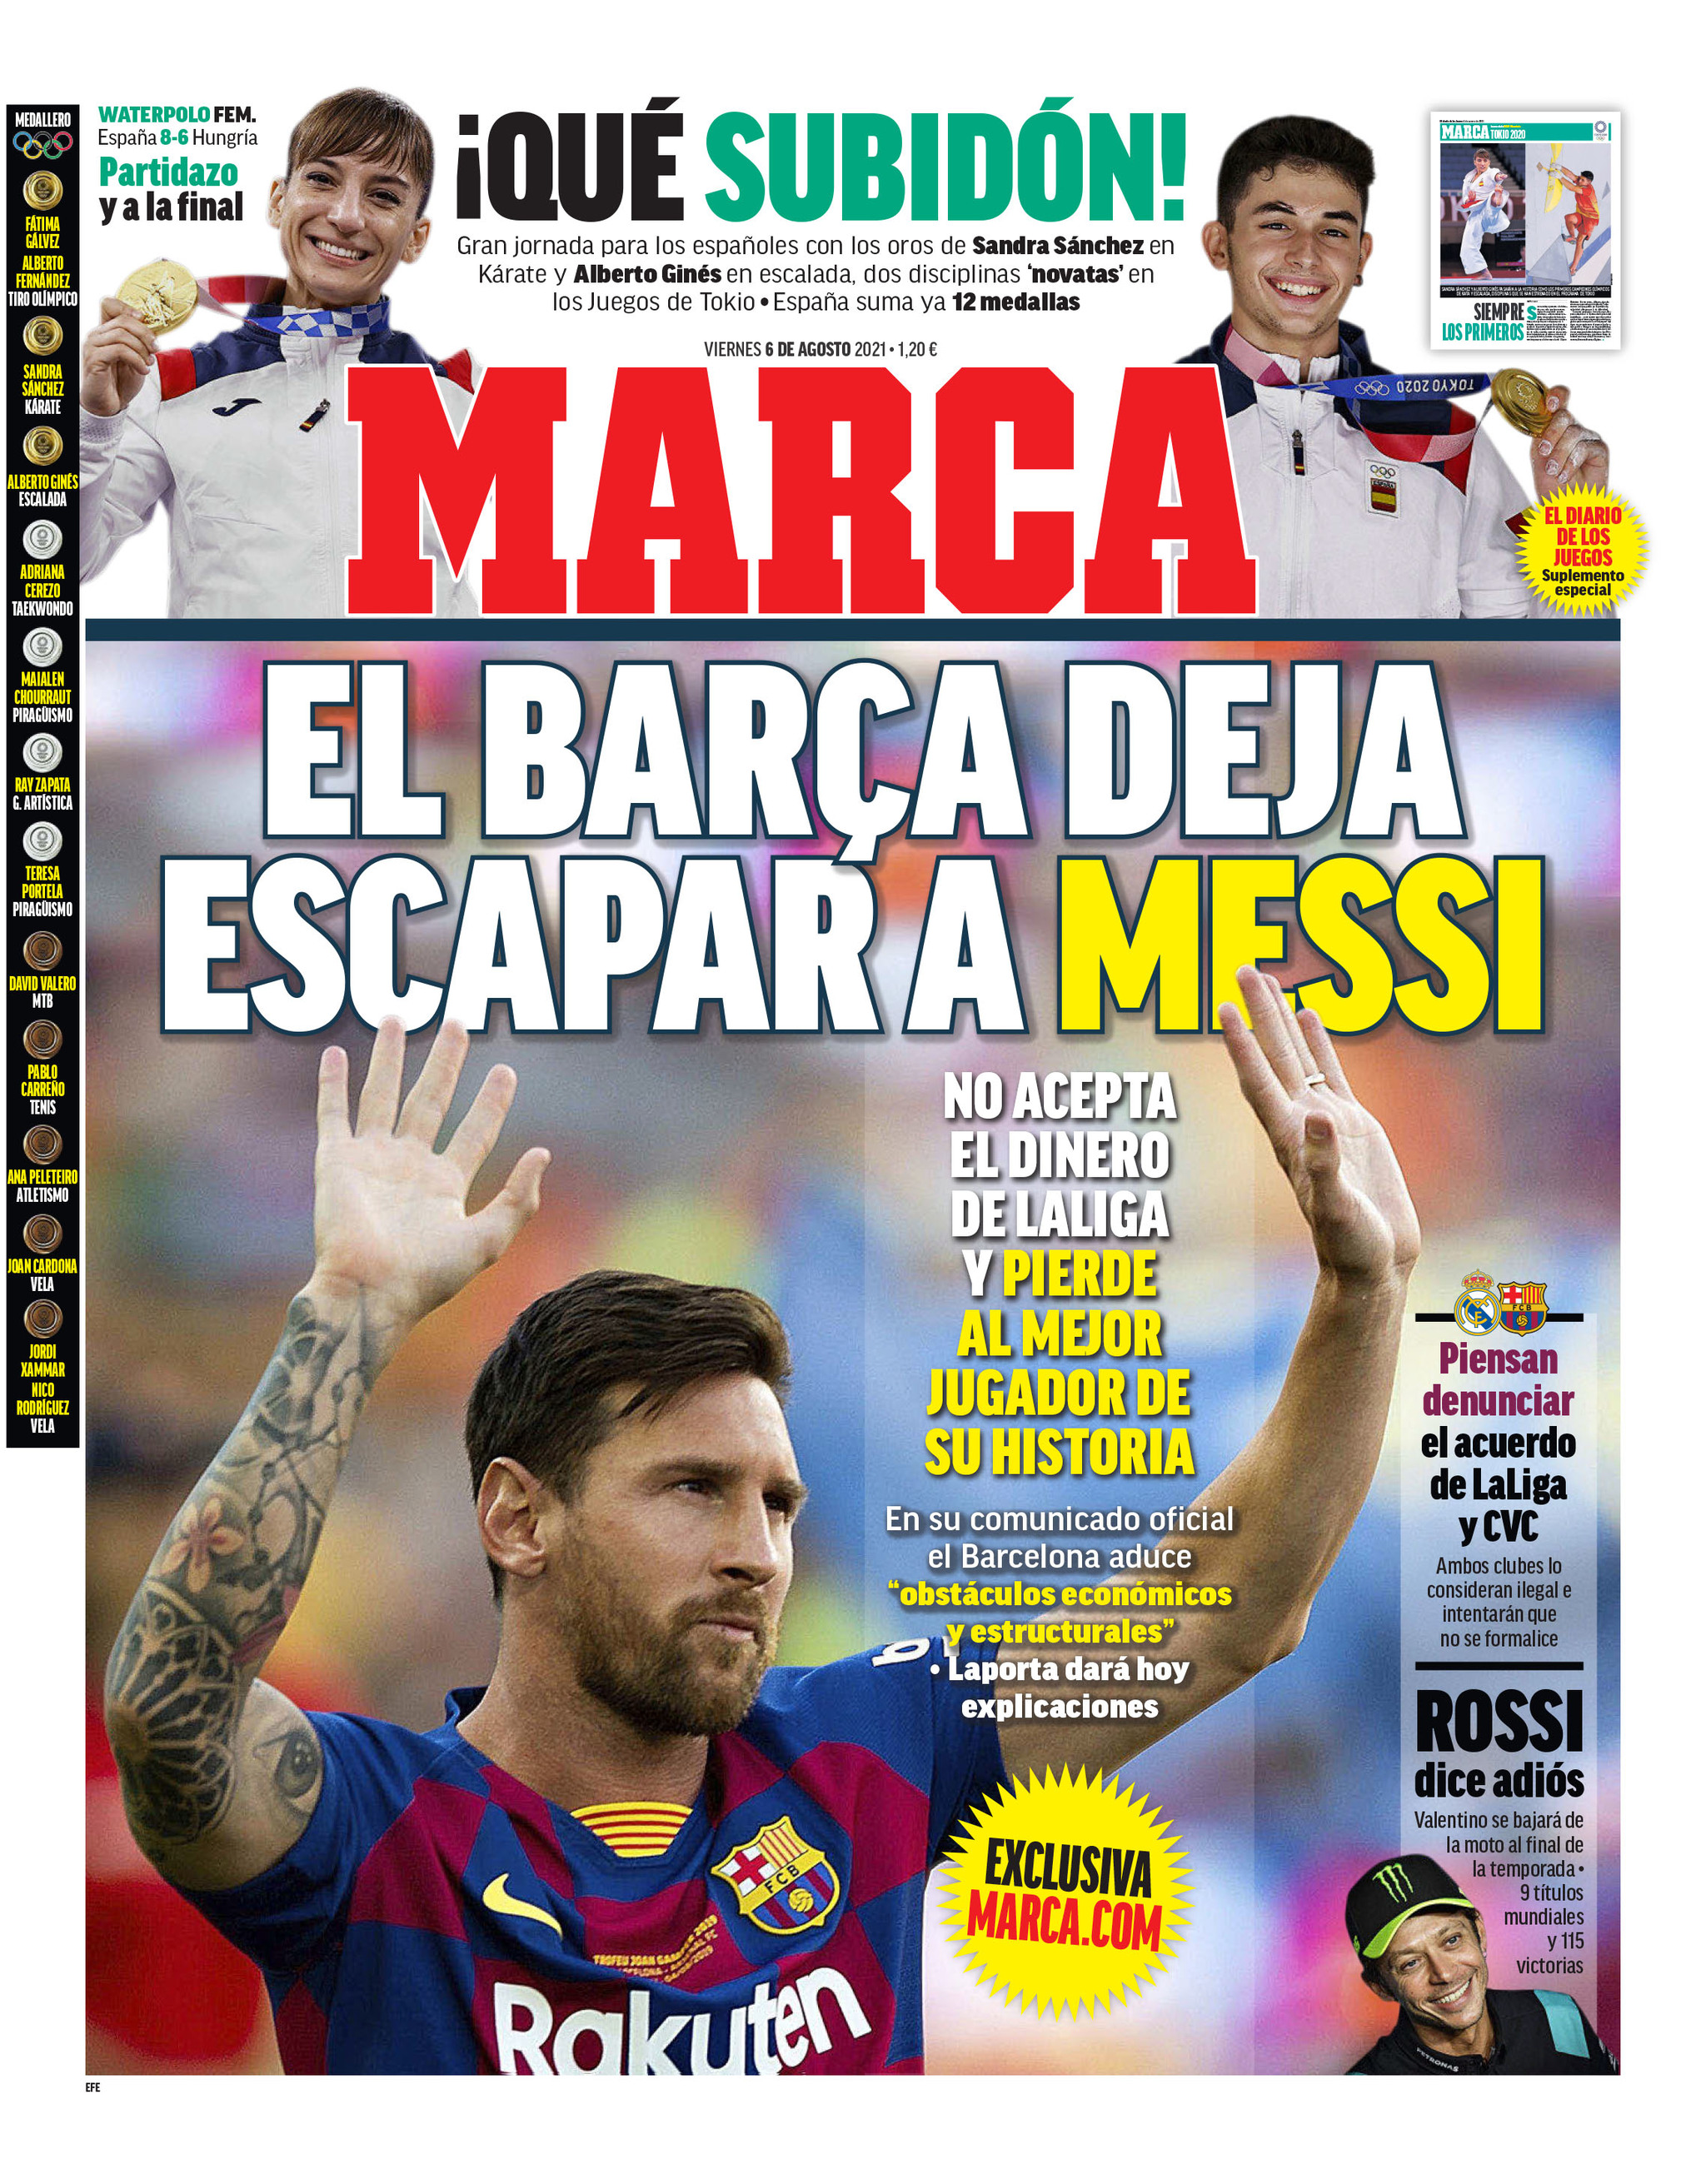 Messi hoy: Messi del Barcelona: Resumen de noticias y reacciones del club tras adiós de La | MARCA Claro Colombia